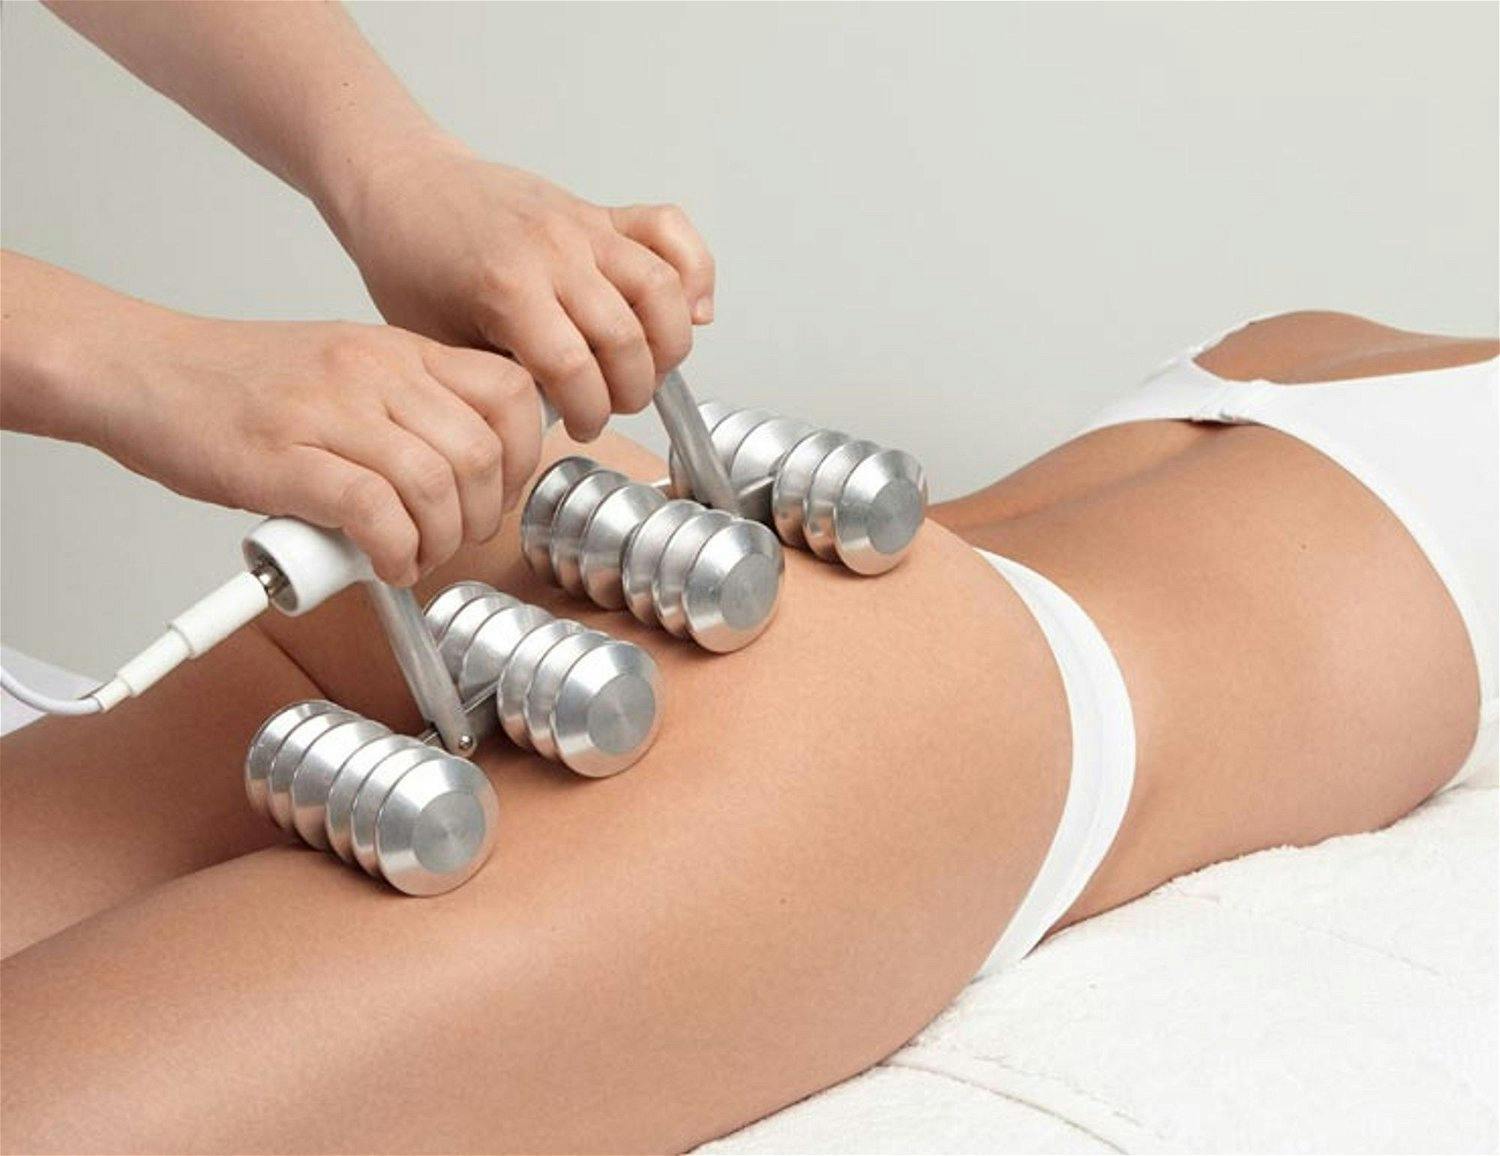 ECM - Electro Cellulite Massage